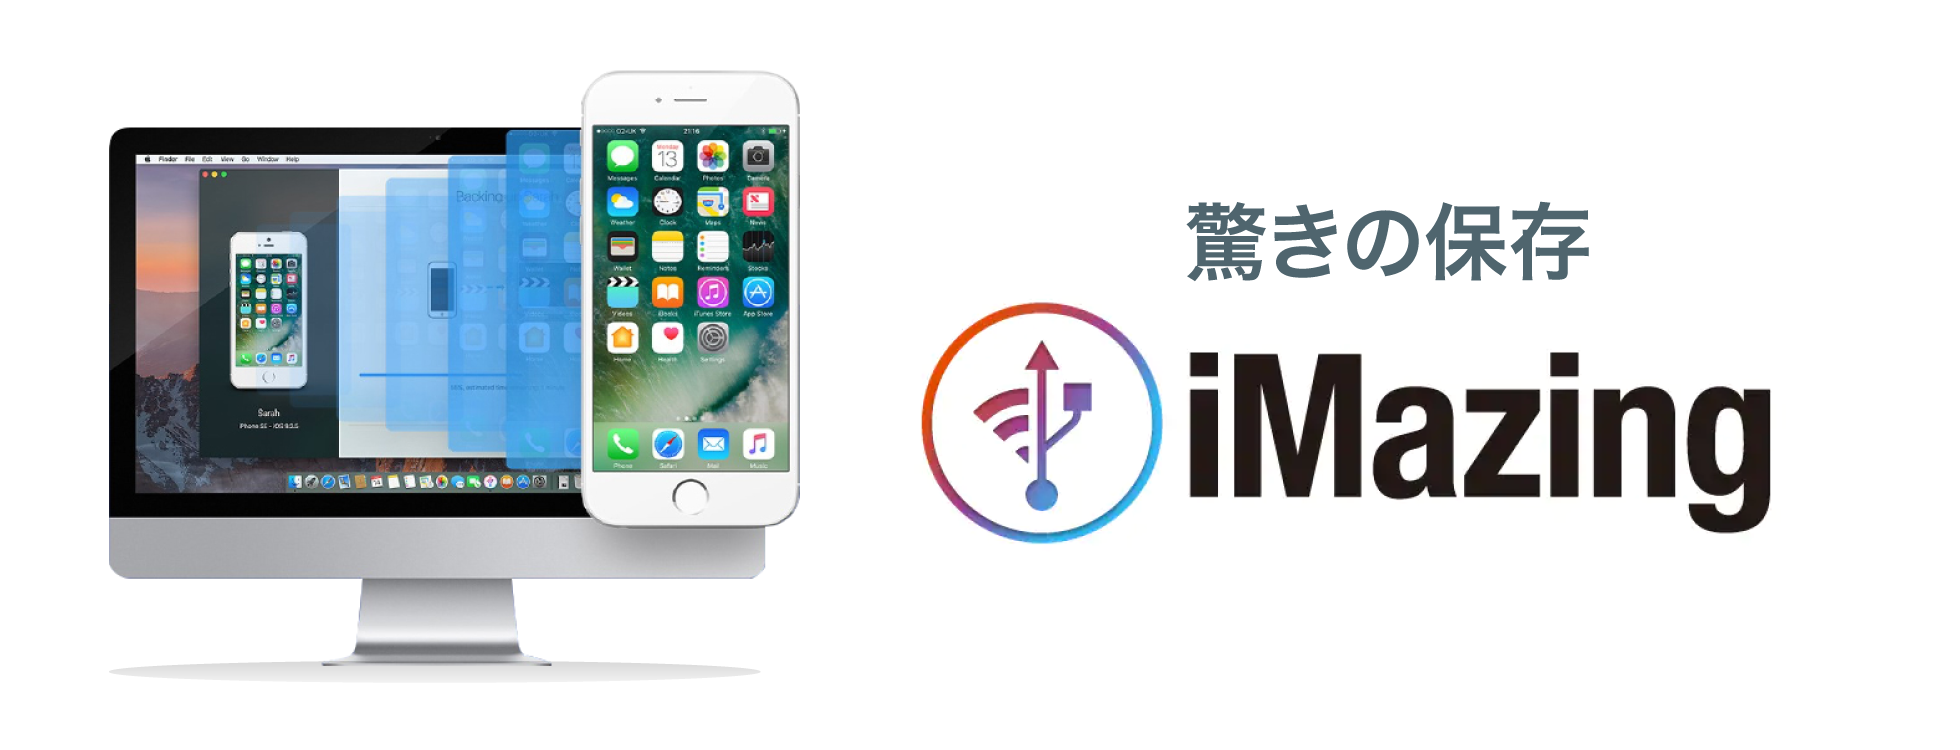 iMazing - iOSバックアップソフト